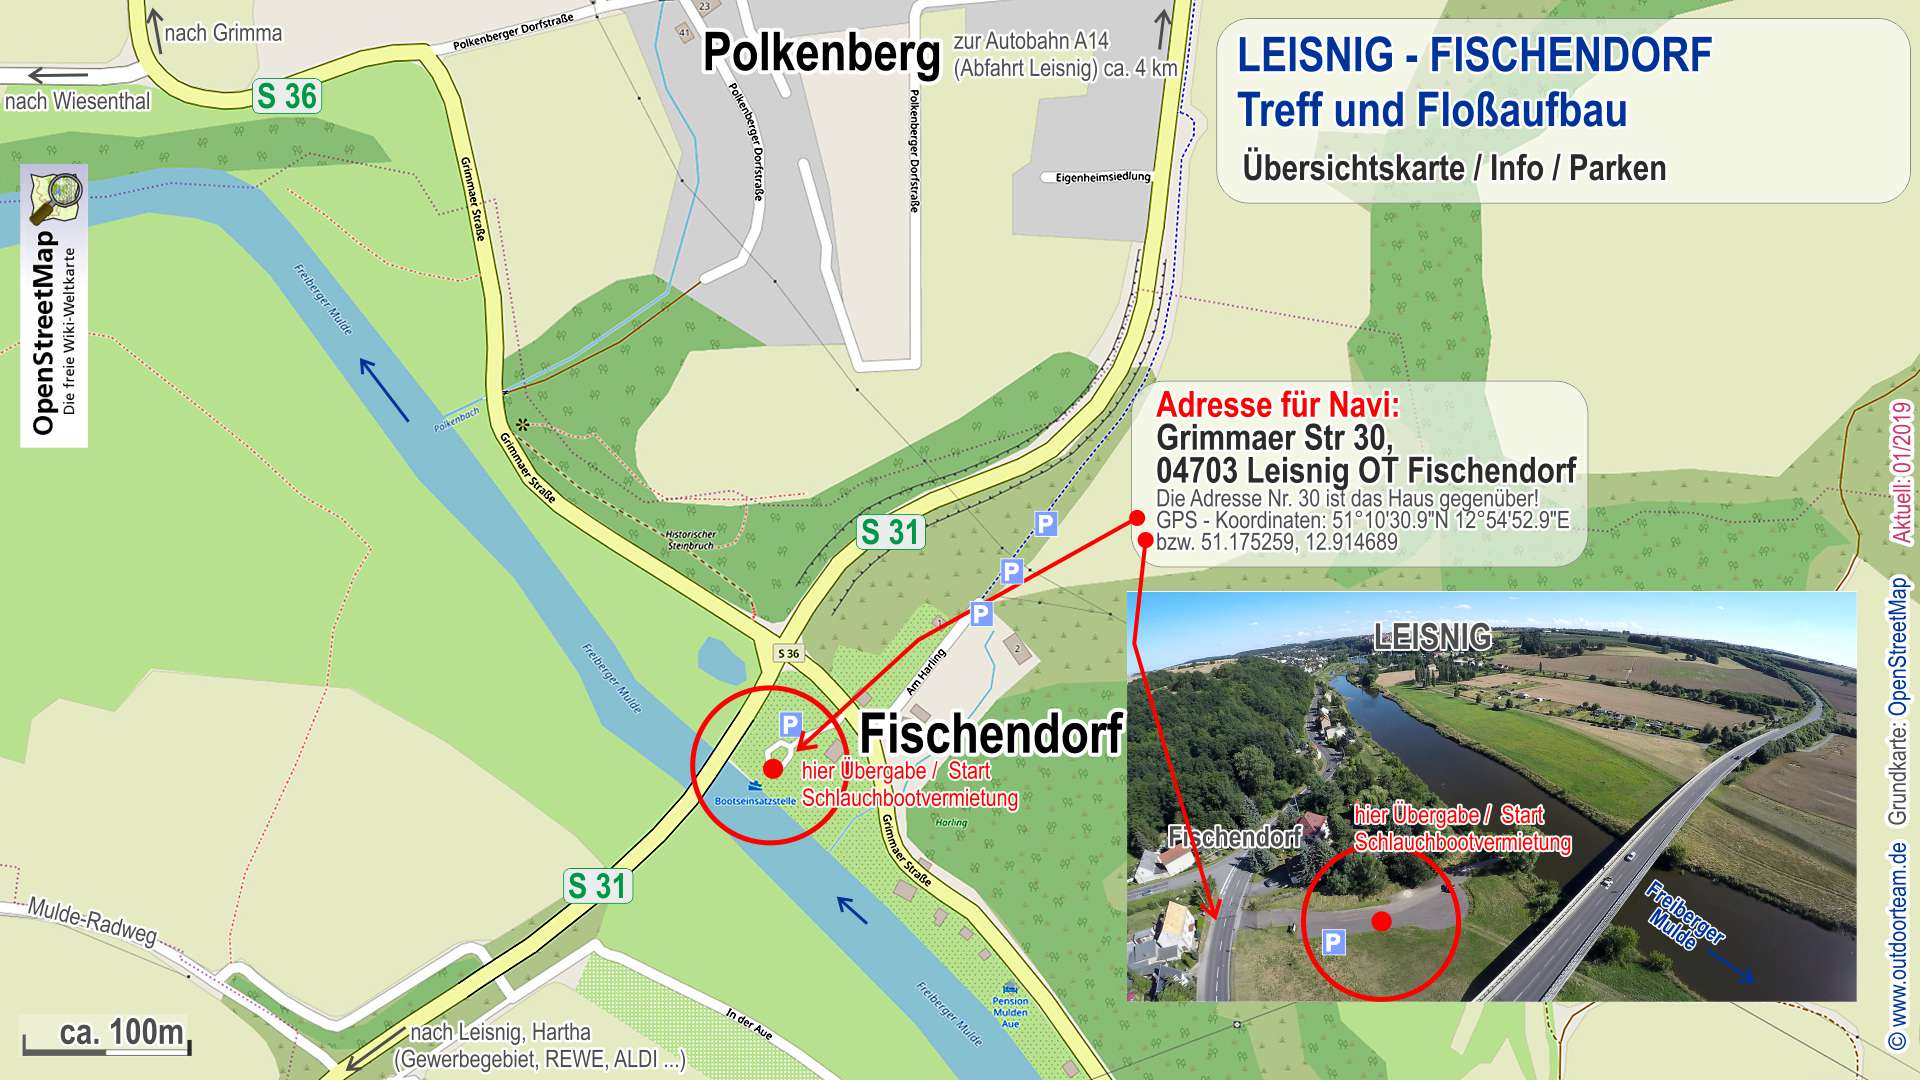 Detailkarte öffentliche Bootseinsatzstelle Leisnig-Fischendorf - hier ist auch Treffpunkt und Aufbau Schülerprojekttag Selbstbaufloß.